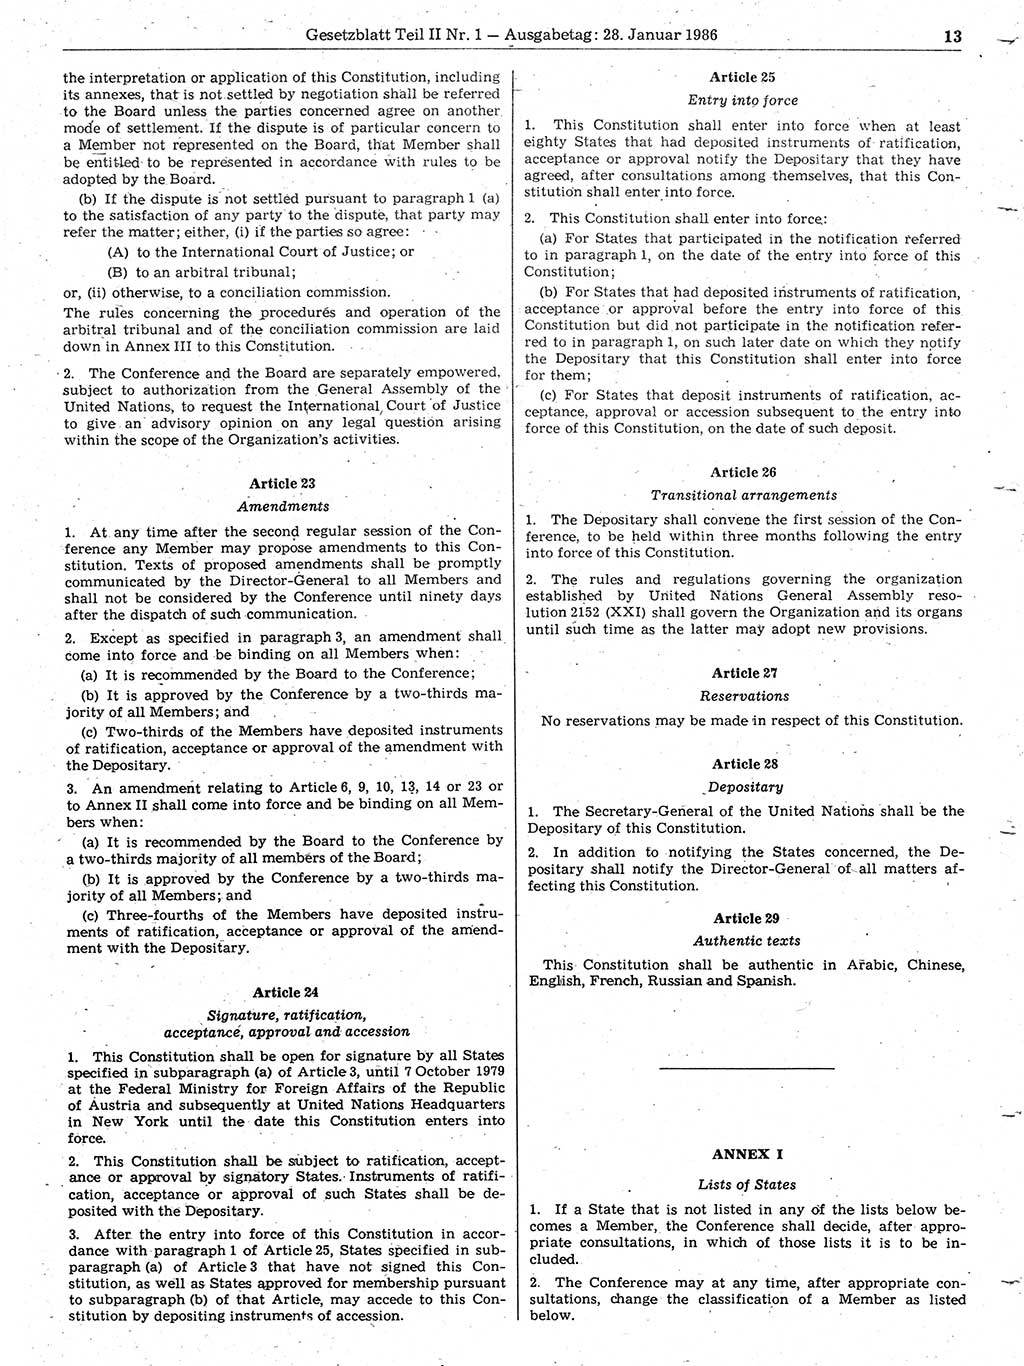 Gesetzblatt (GBl.) der Deutschen Demokratischen Republik (DDR) Teil ⅠⅠ 1986, Seite 13 (GBl. DDR ⅠⅠ 1986, S. 13)